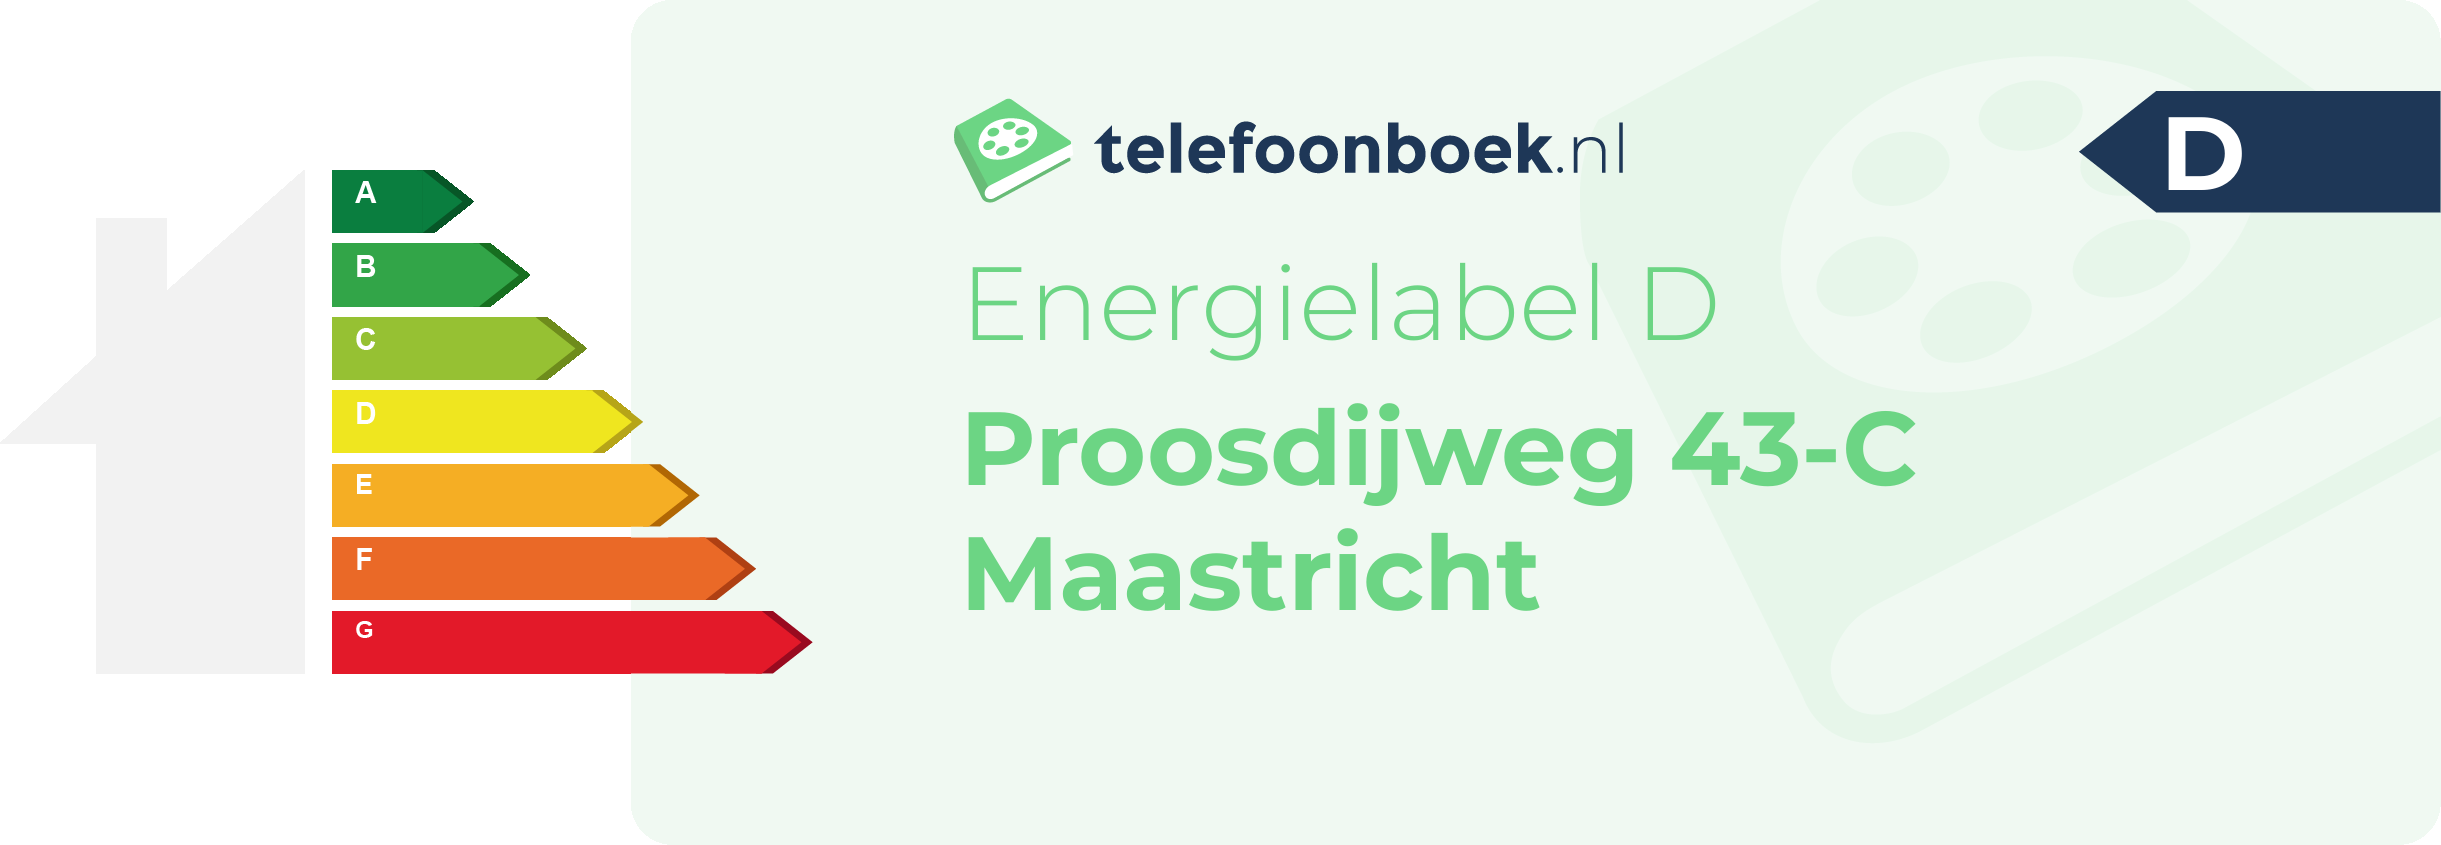 Energielabel Proosdijweg 43-C Maastricht